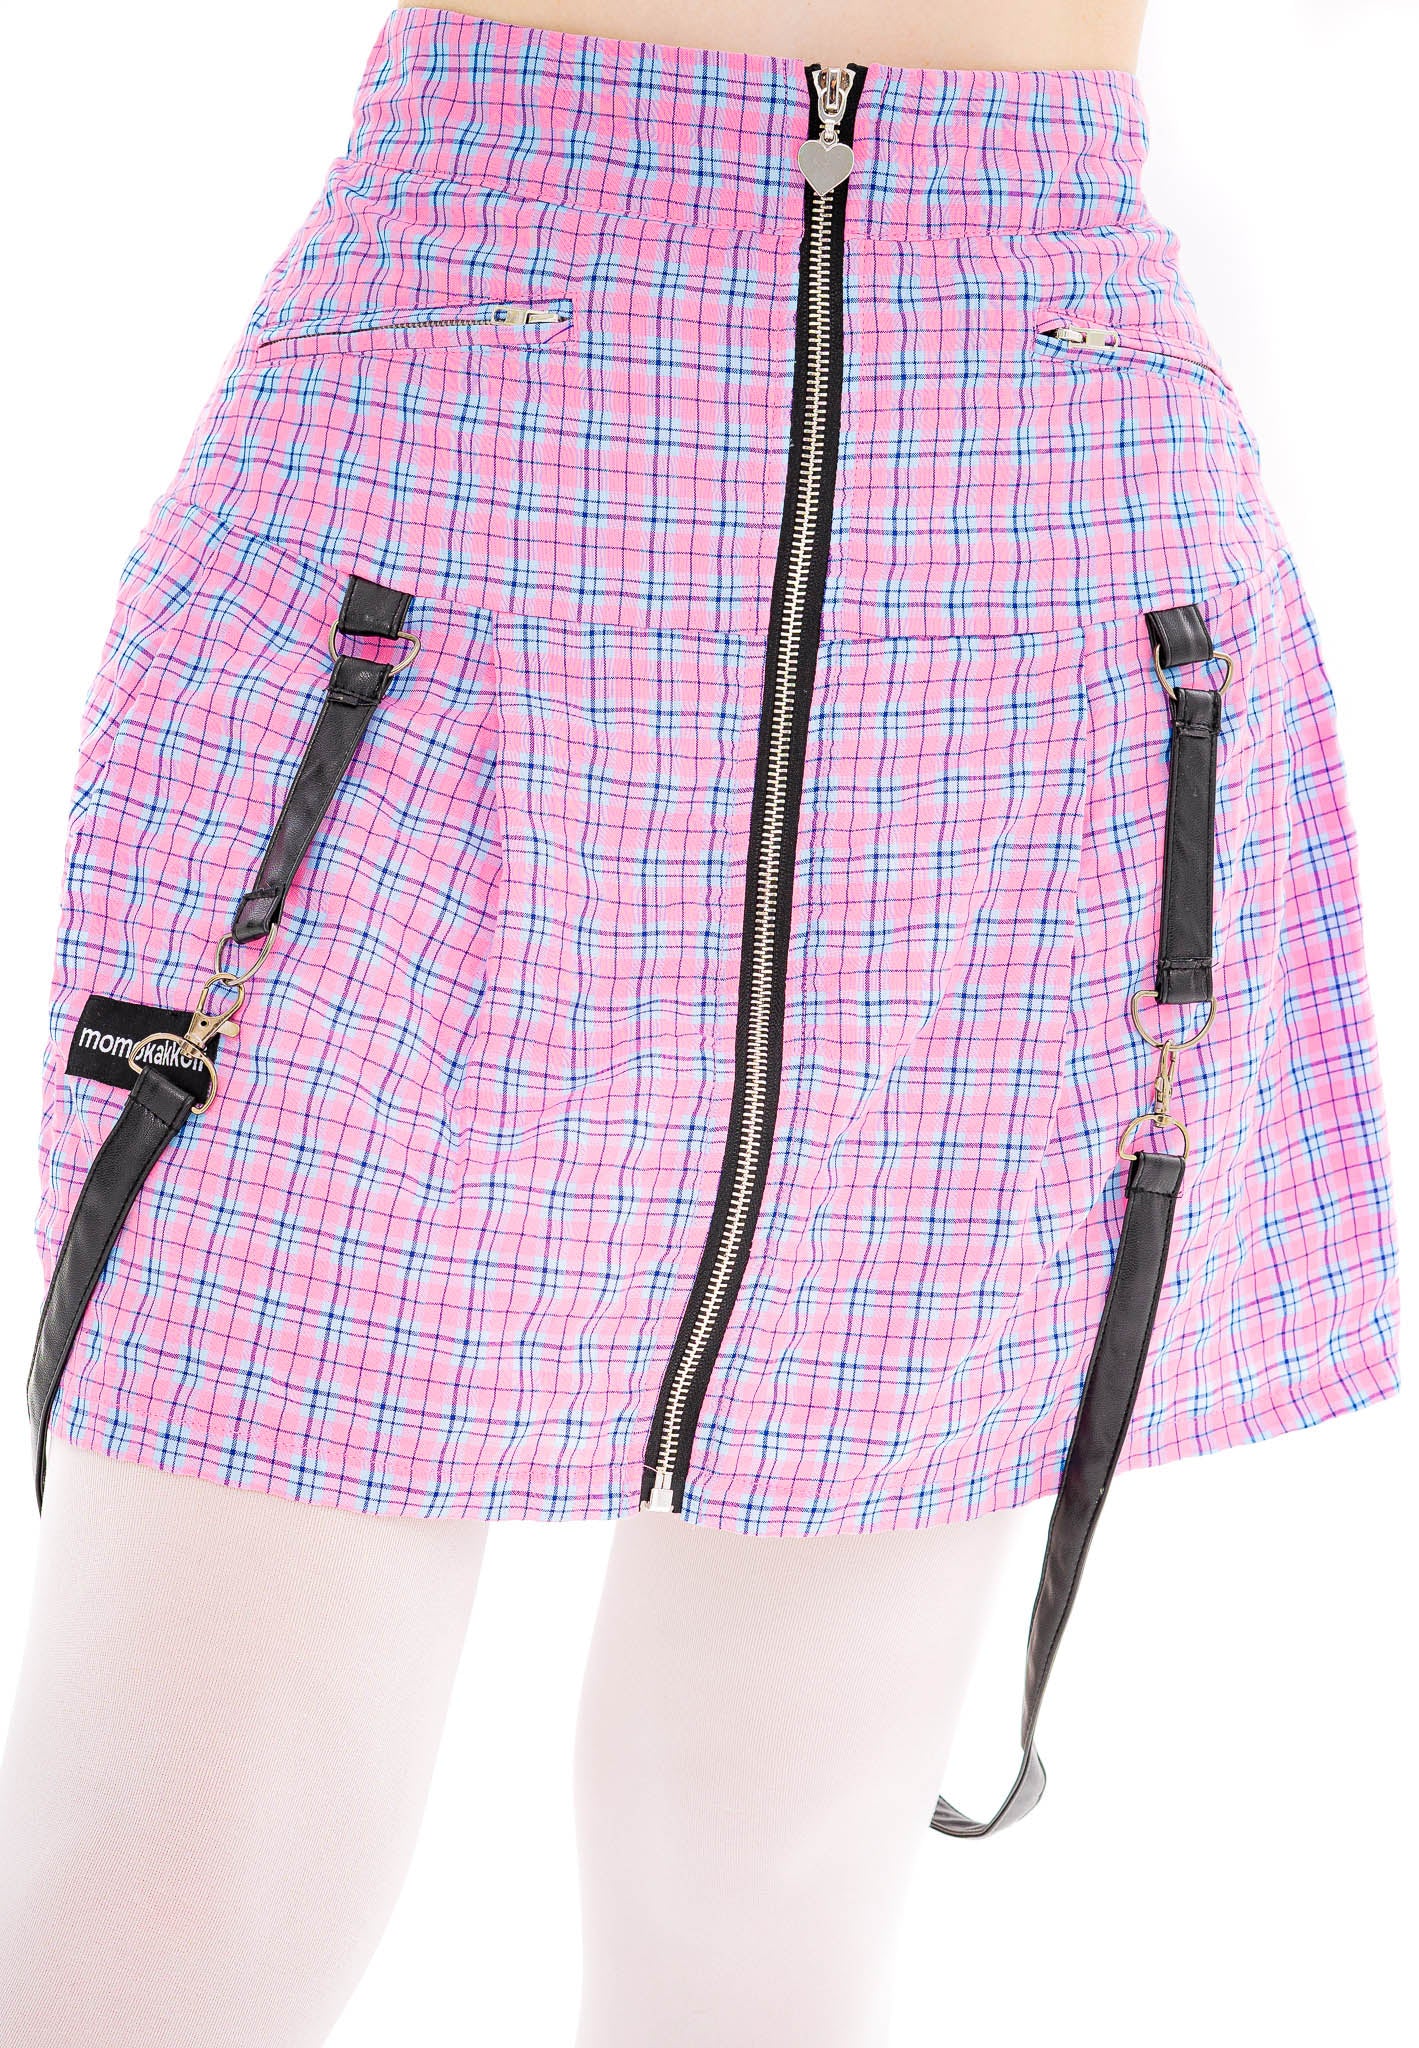 Bubble Gum Pink Plaid Skirt - Momokakkoii